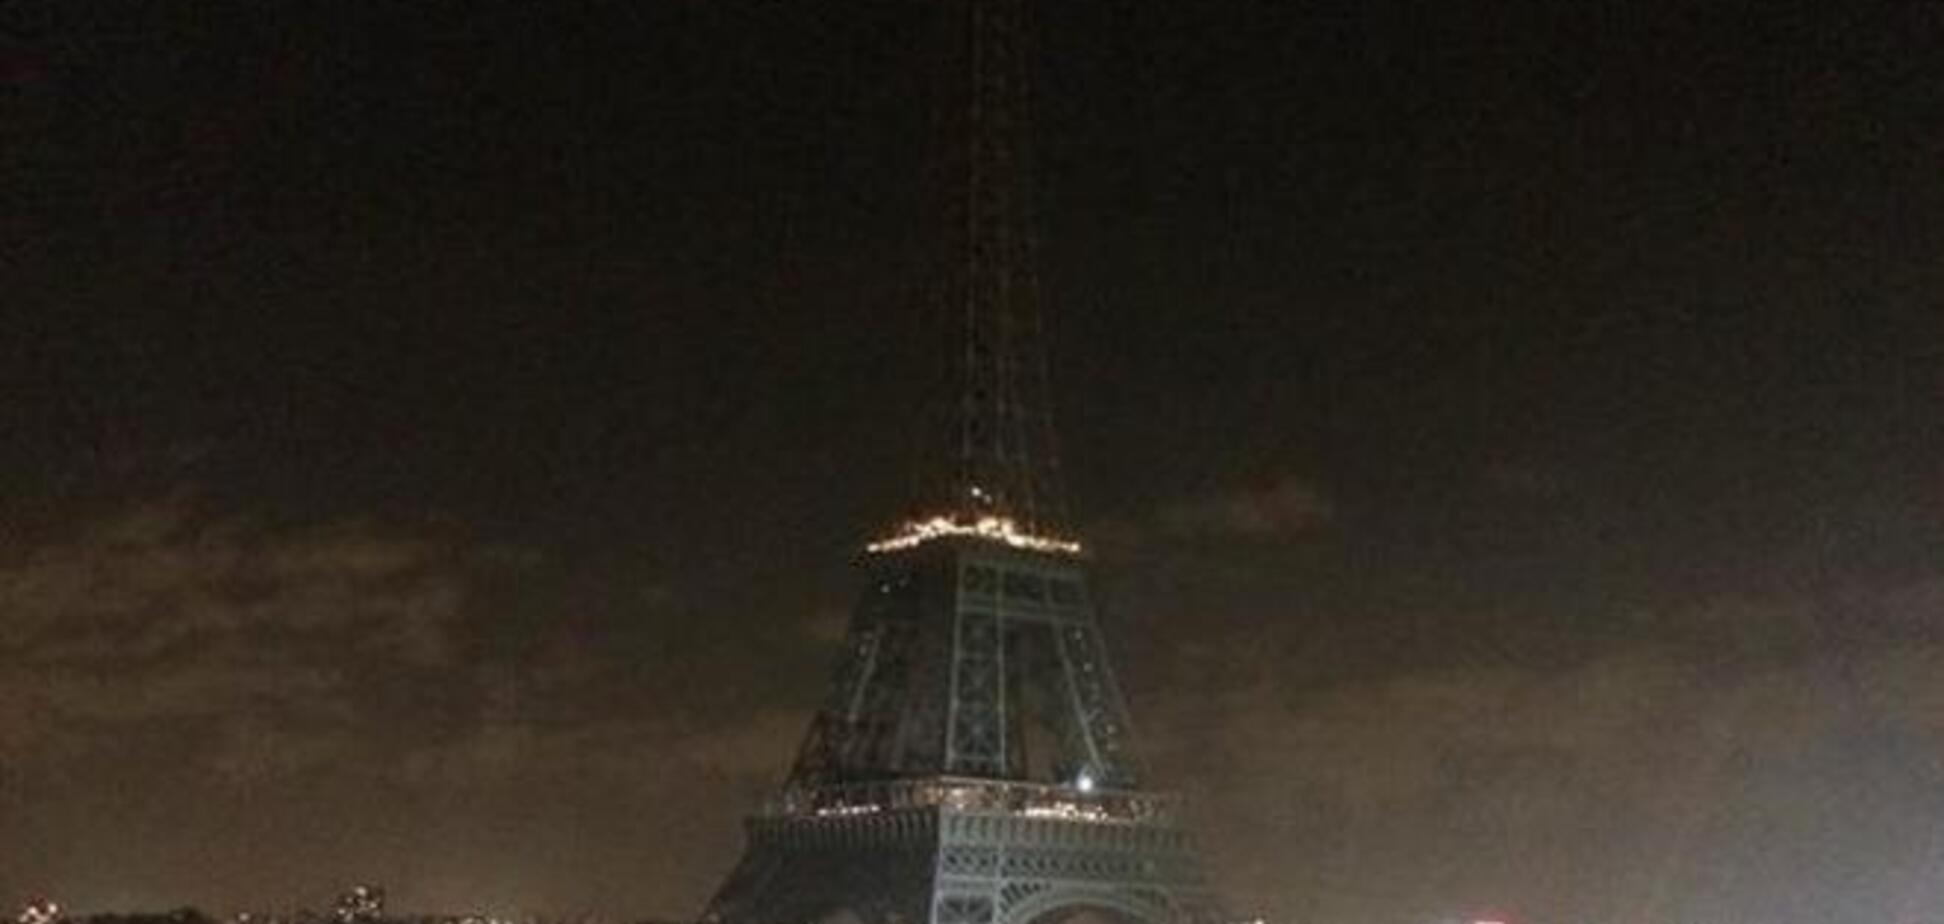  Эйфелева башня погасла в память о погибших журналистах в Париже: опубликованы фото и видео